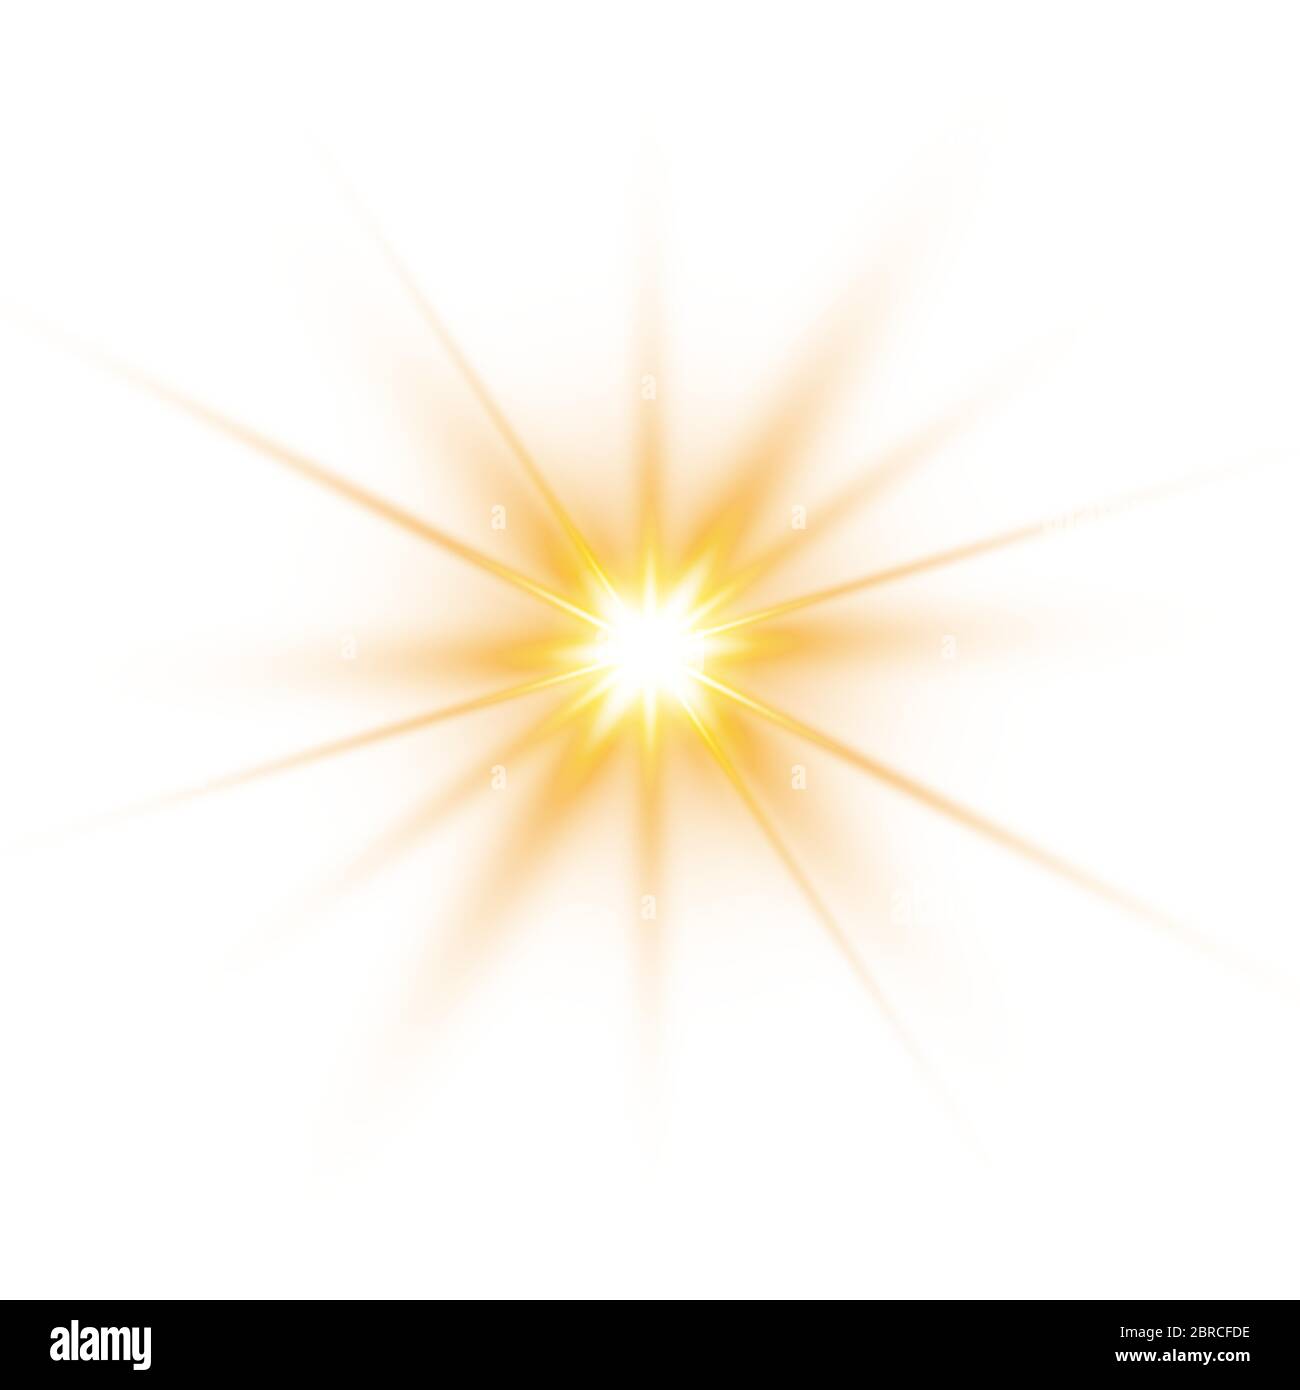 Sonnenlicht ein durchscheinendes spezielles Design des Lichteffekts. Vektorgrafiken. Stock Vektor